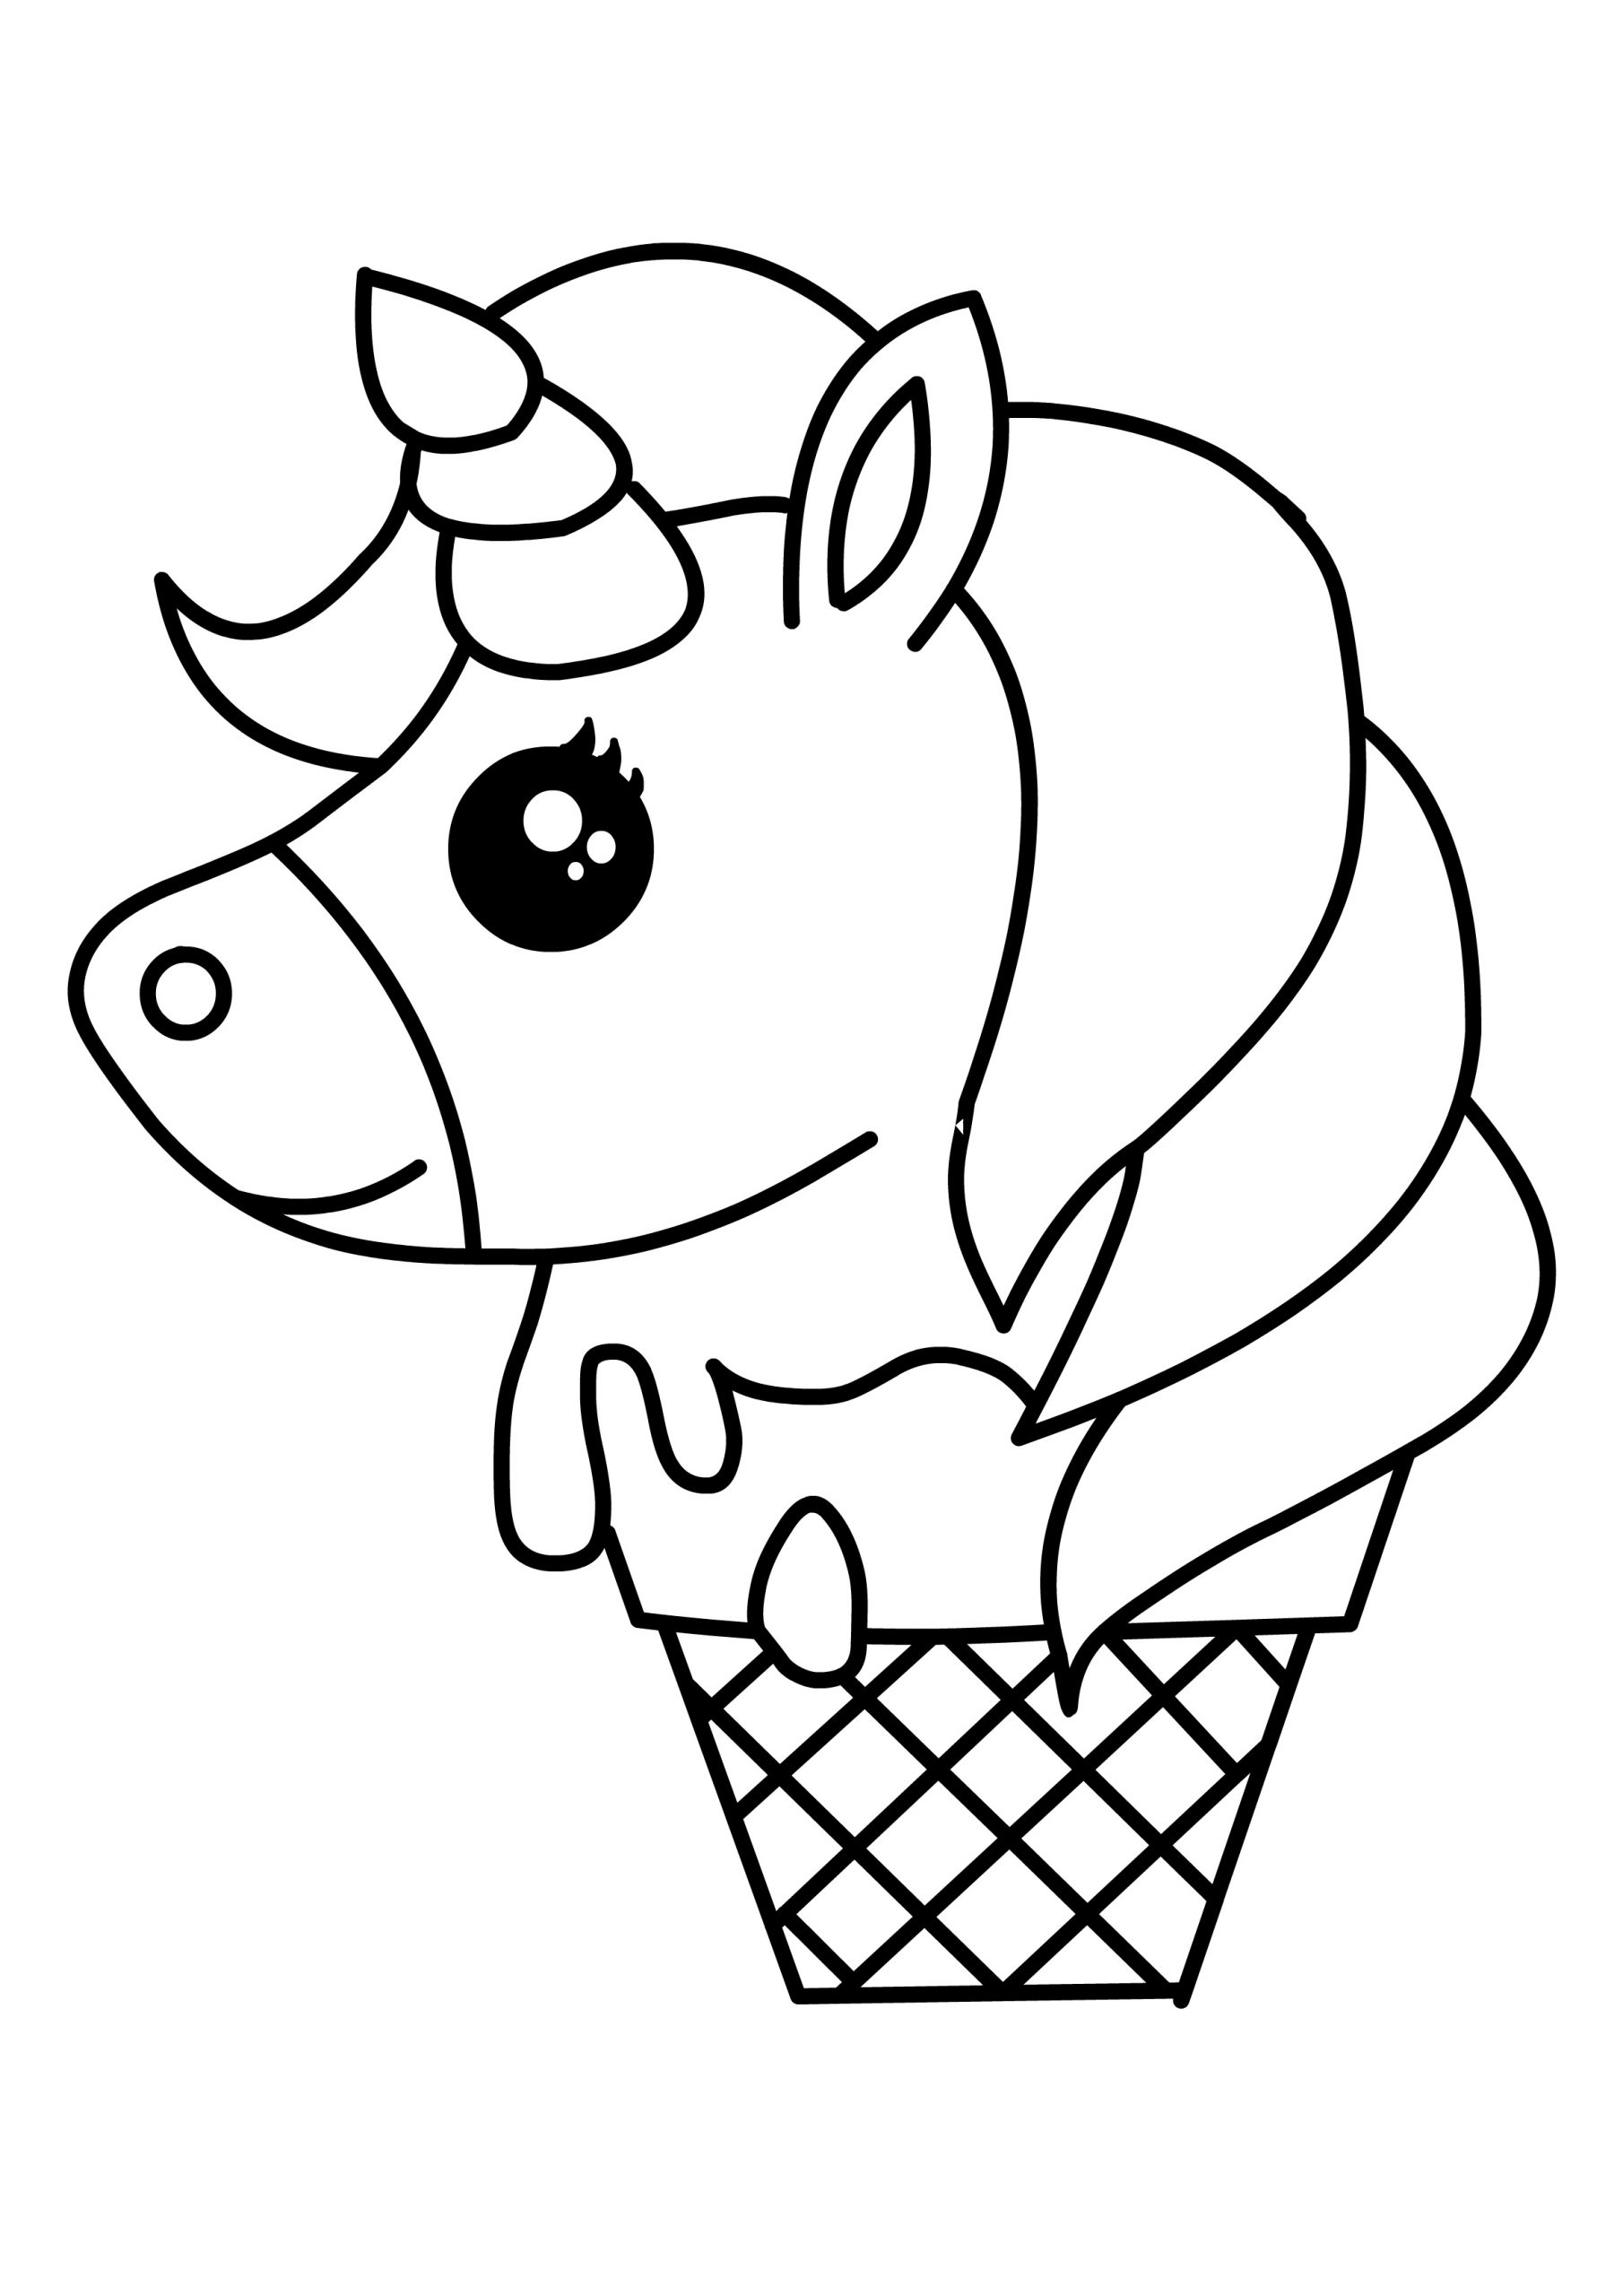 desenho de unicórnio de sorvete para colorir 13345671 Vetor no